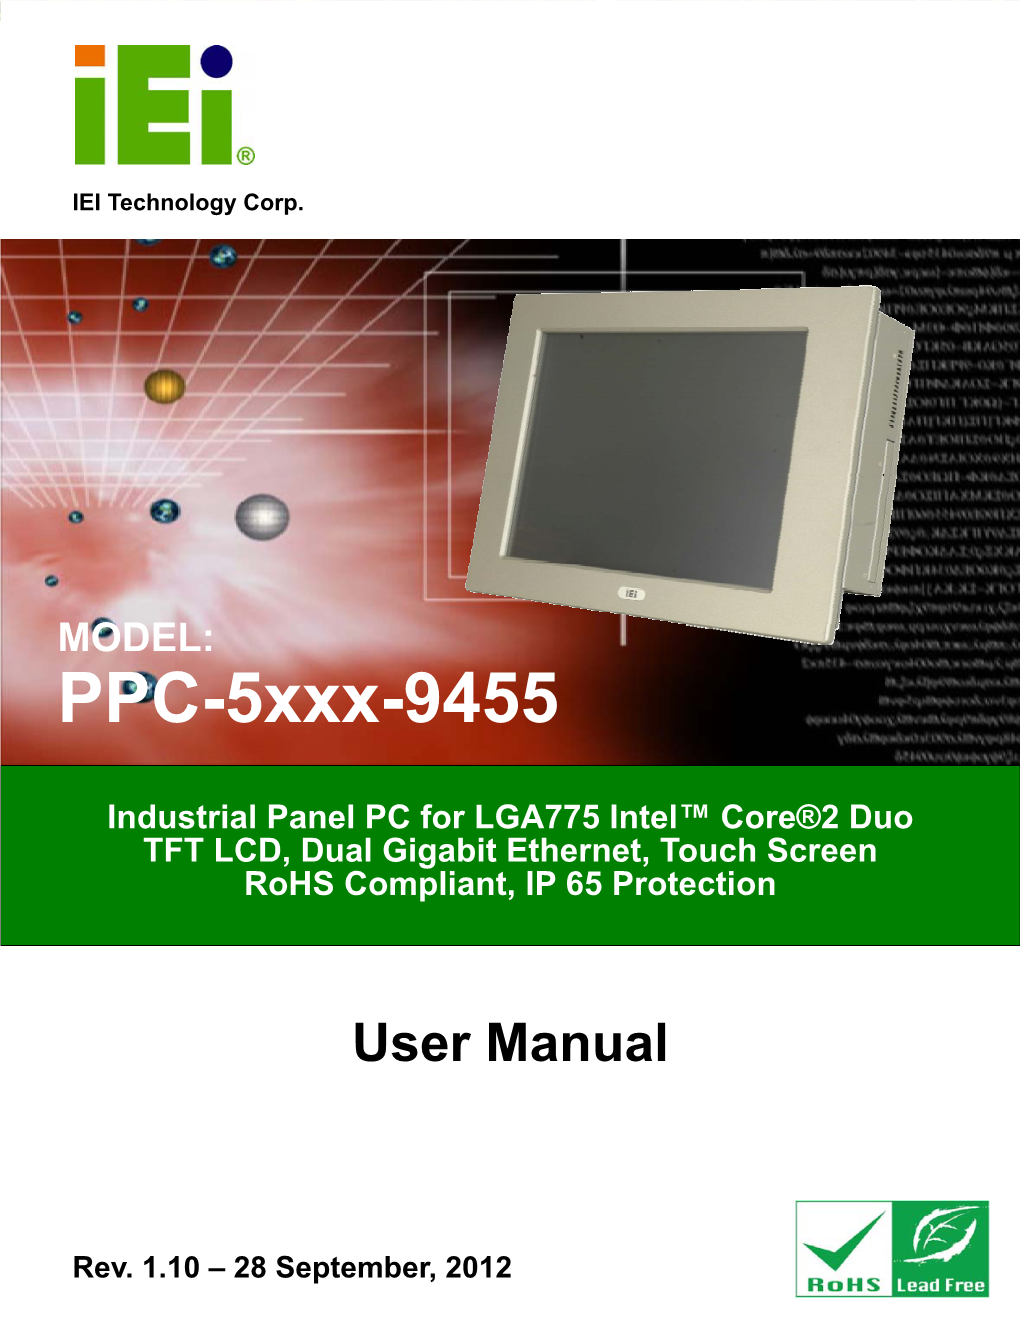 PPC-5Xxx-9455 Panel PC